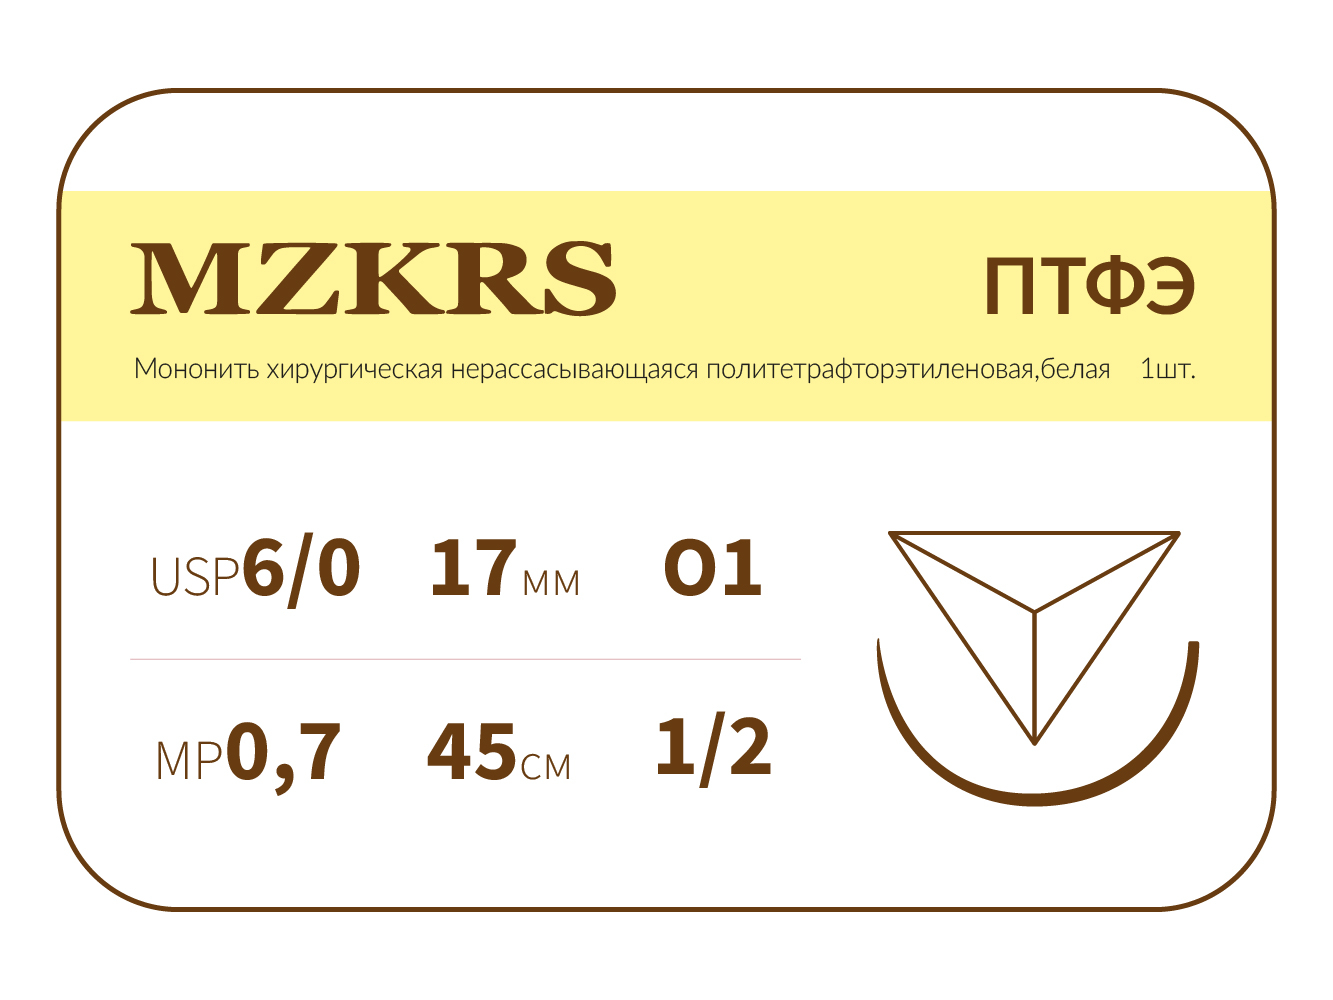 1712О1-Premium 6/0 (0.7) 45 ПТФЭ хирургическая нить политетрафторэтиленовая, MZKRS (Россия)